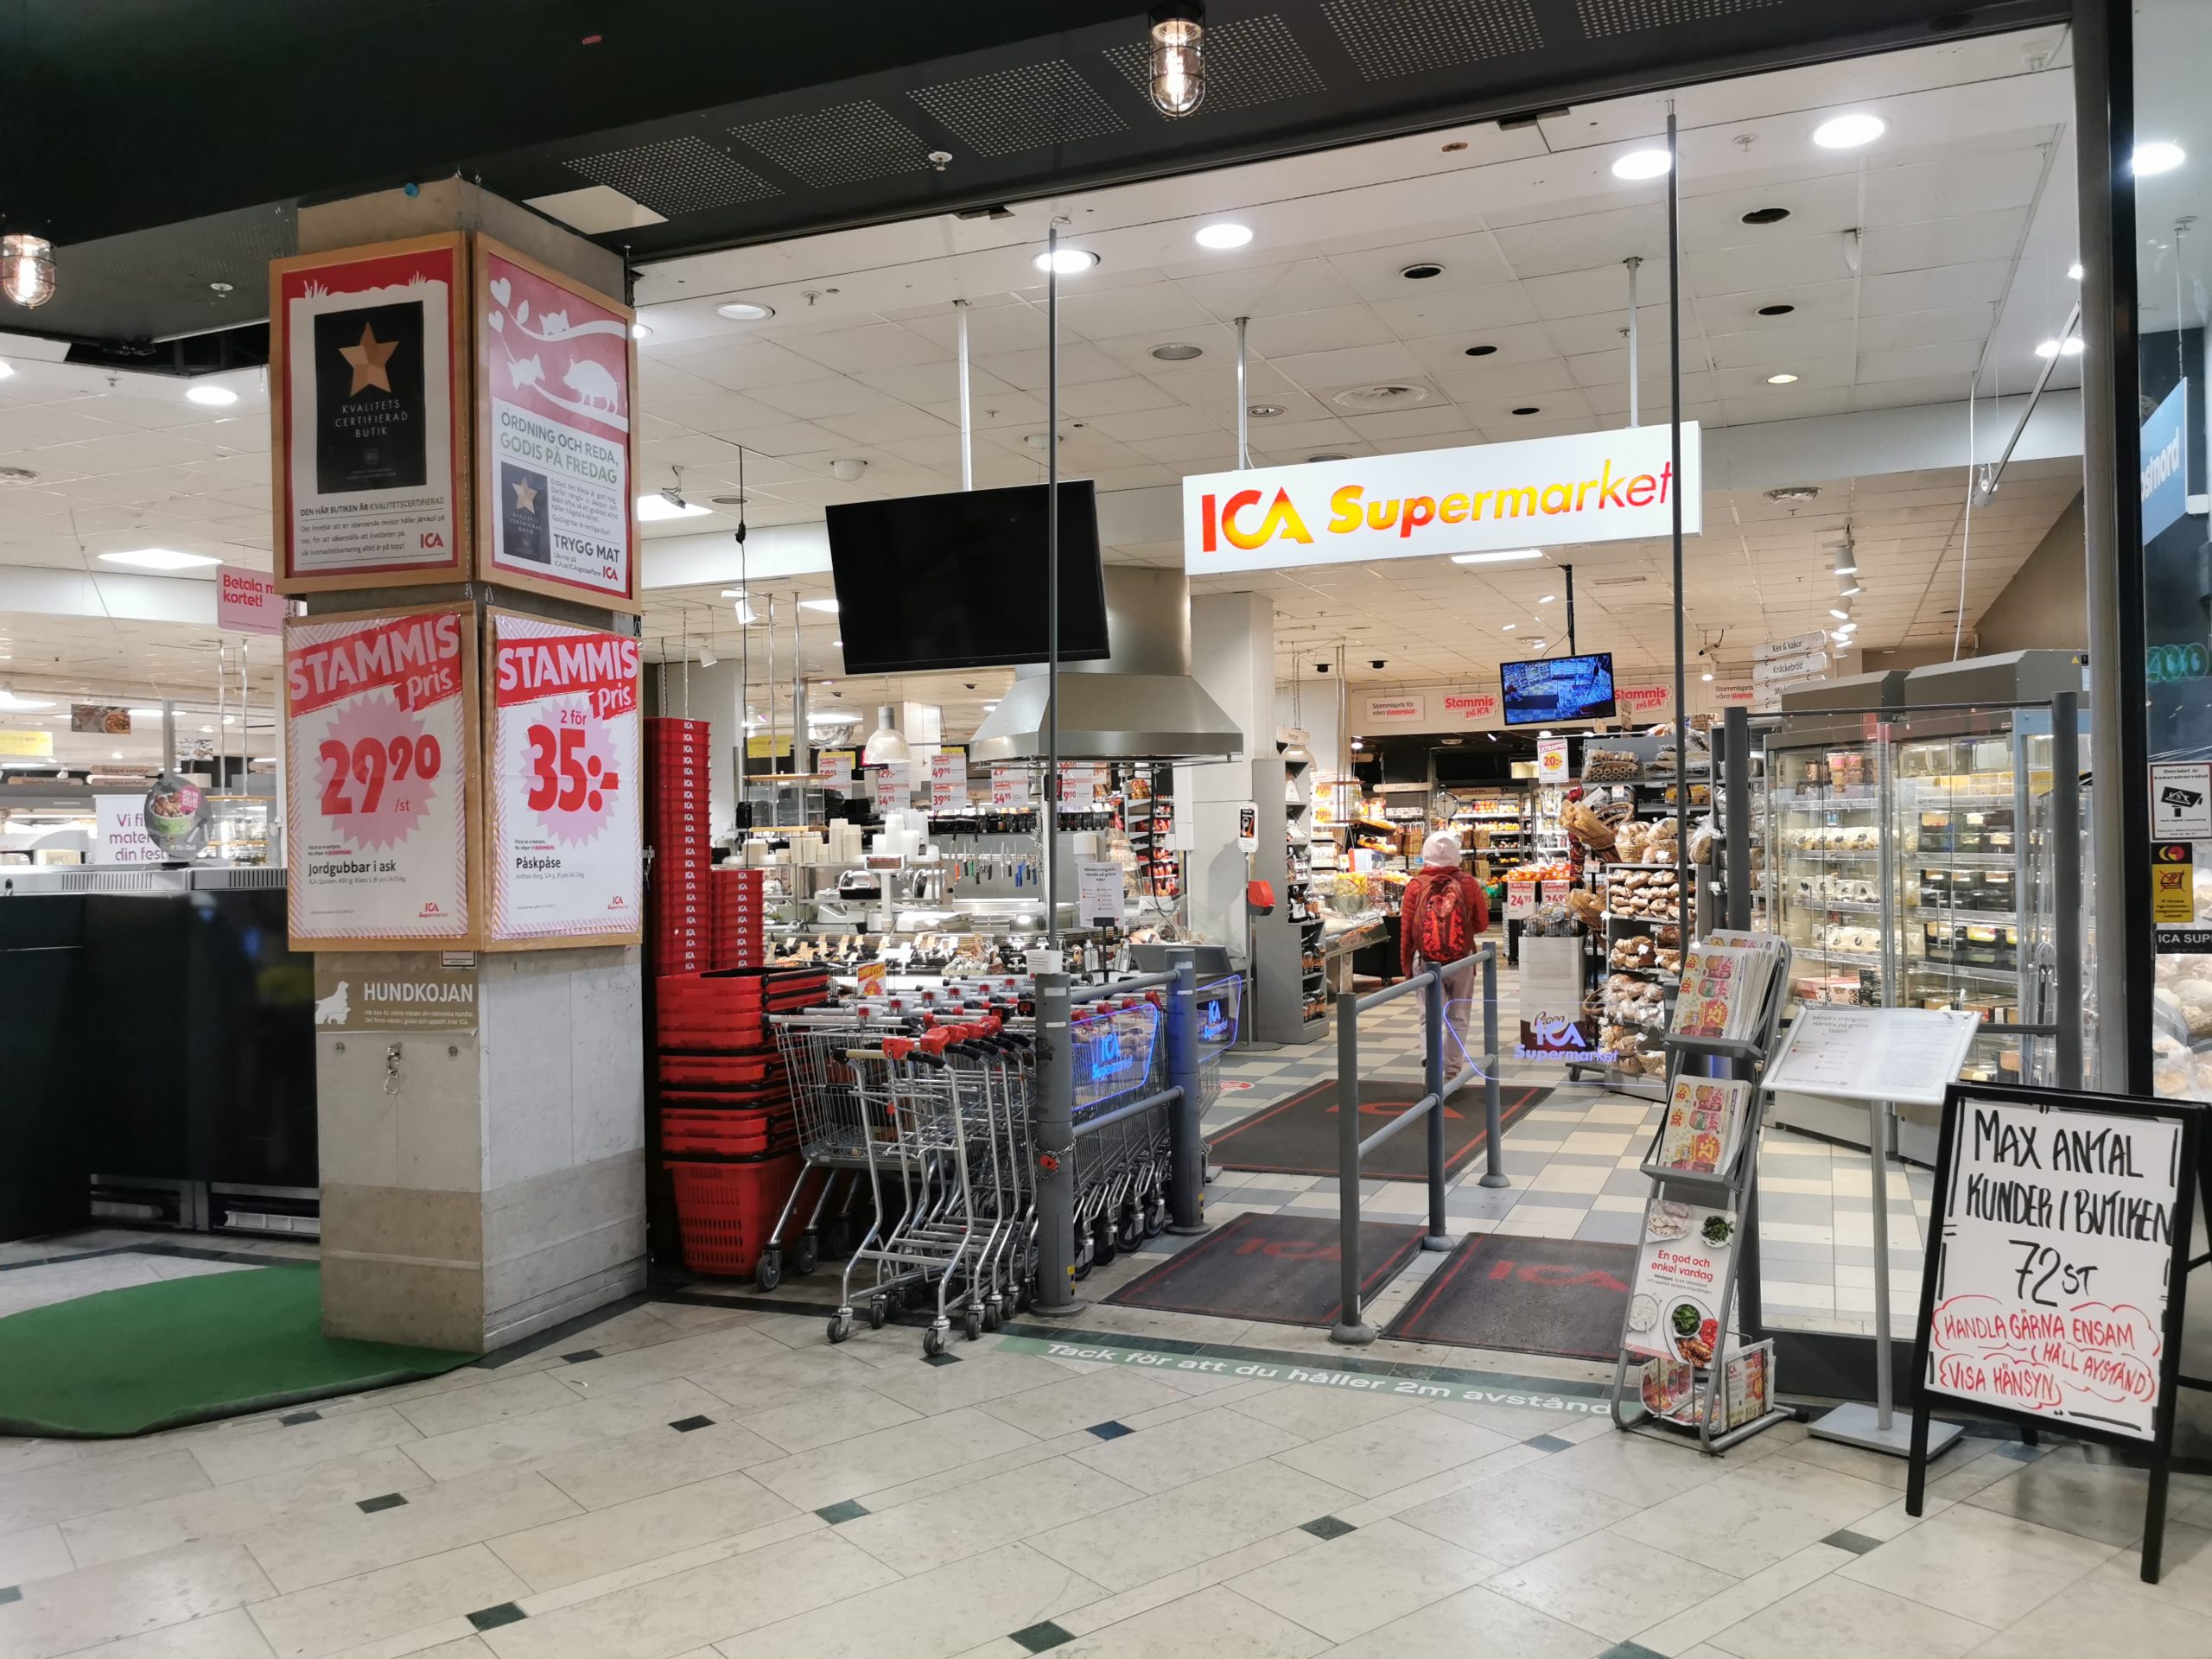 ICA Supermarket Västermalmsgallerian